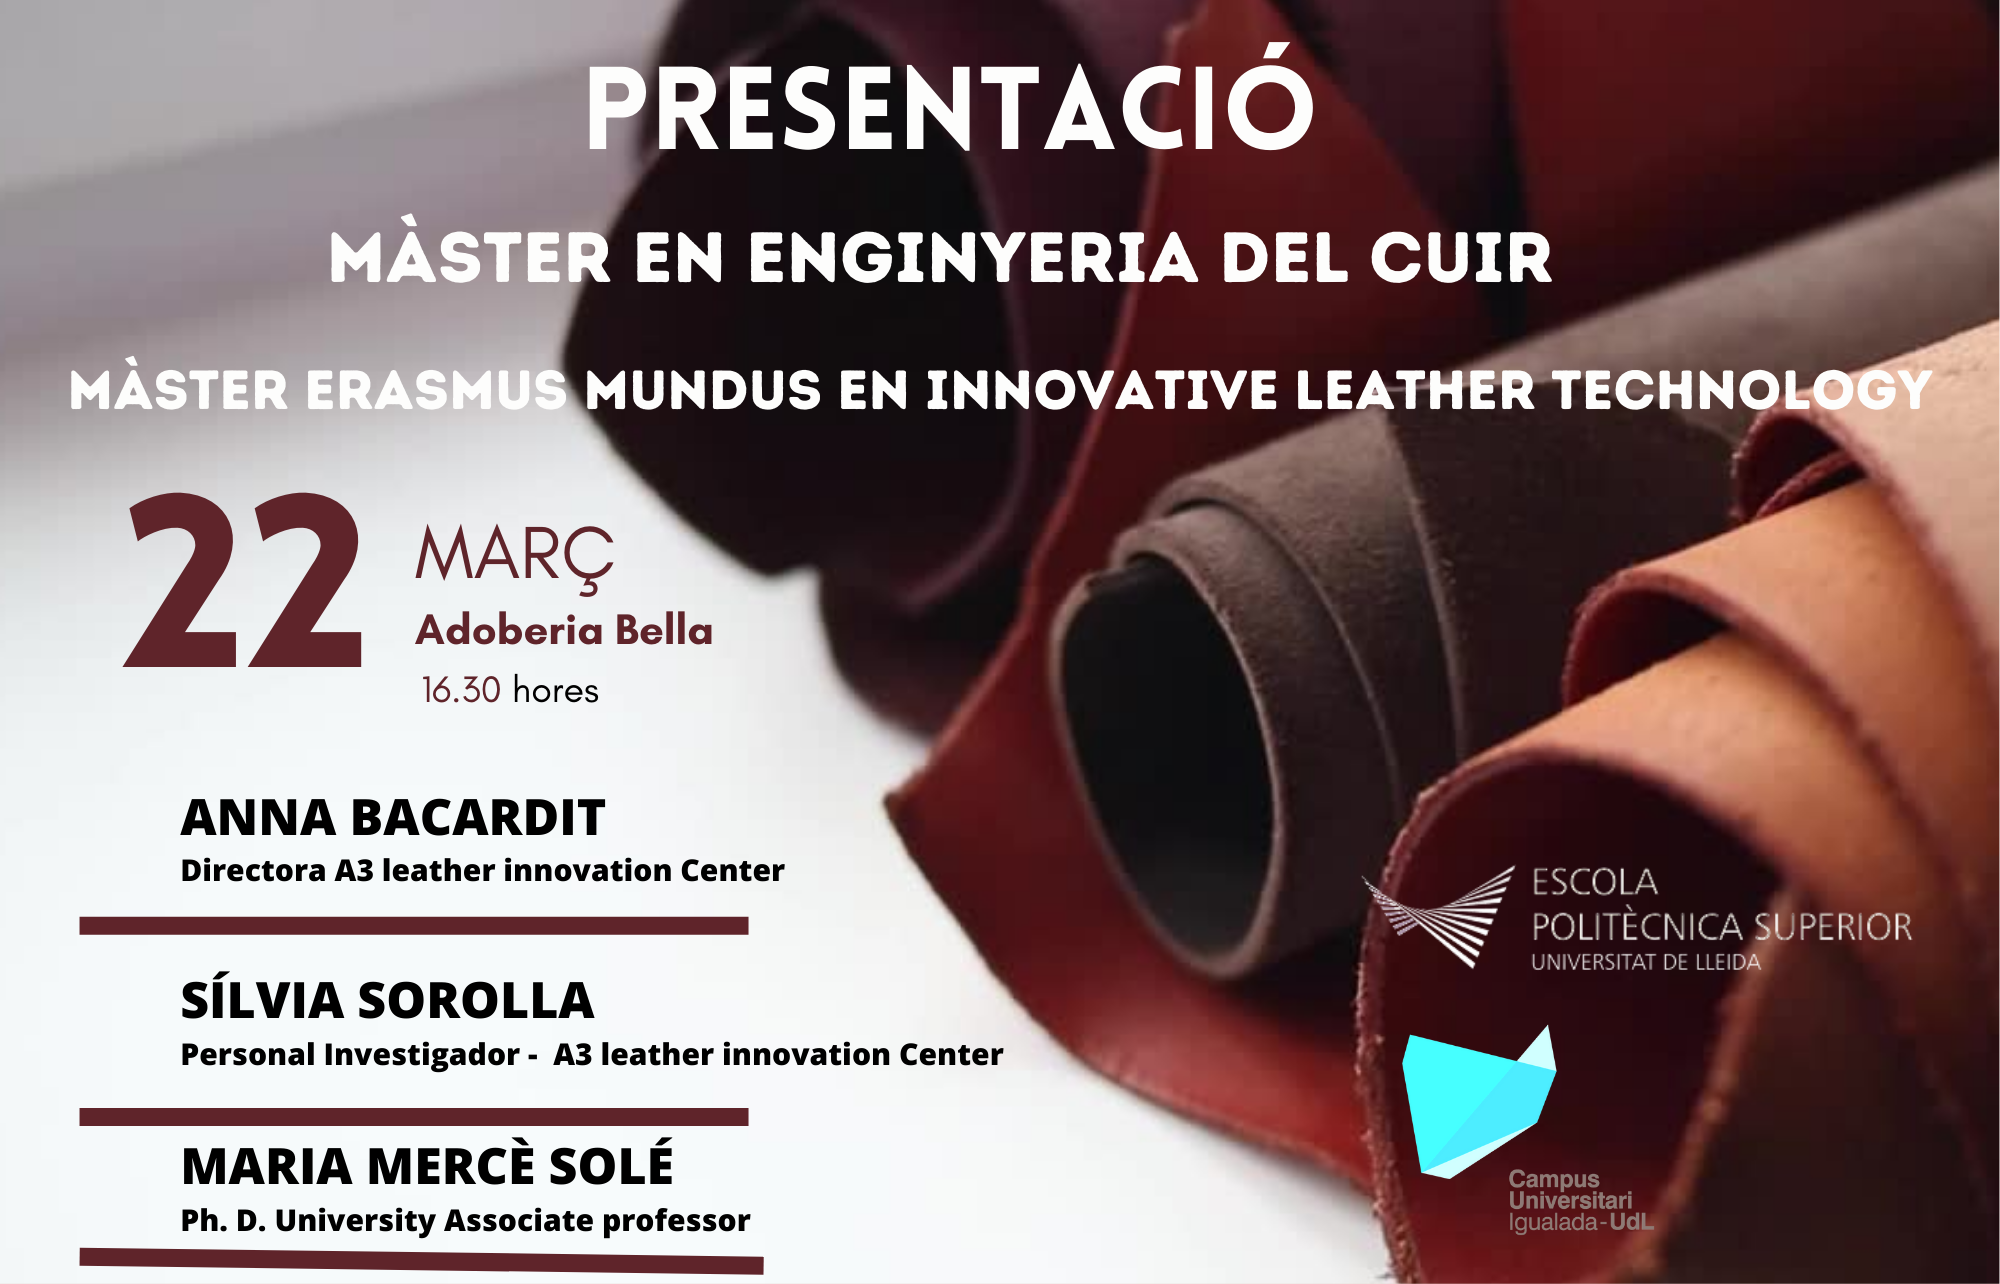 Sessió de Presentació del Màster en Enginyeria del Cuir i el Màster Universitari Erasmus Mundus en Innovative Leather Technology.